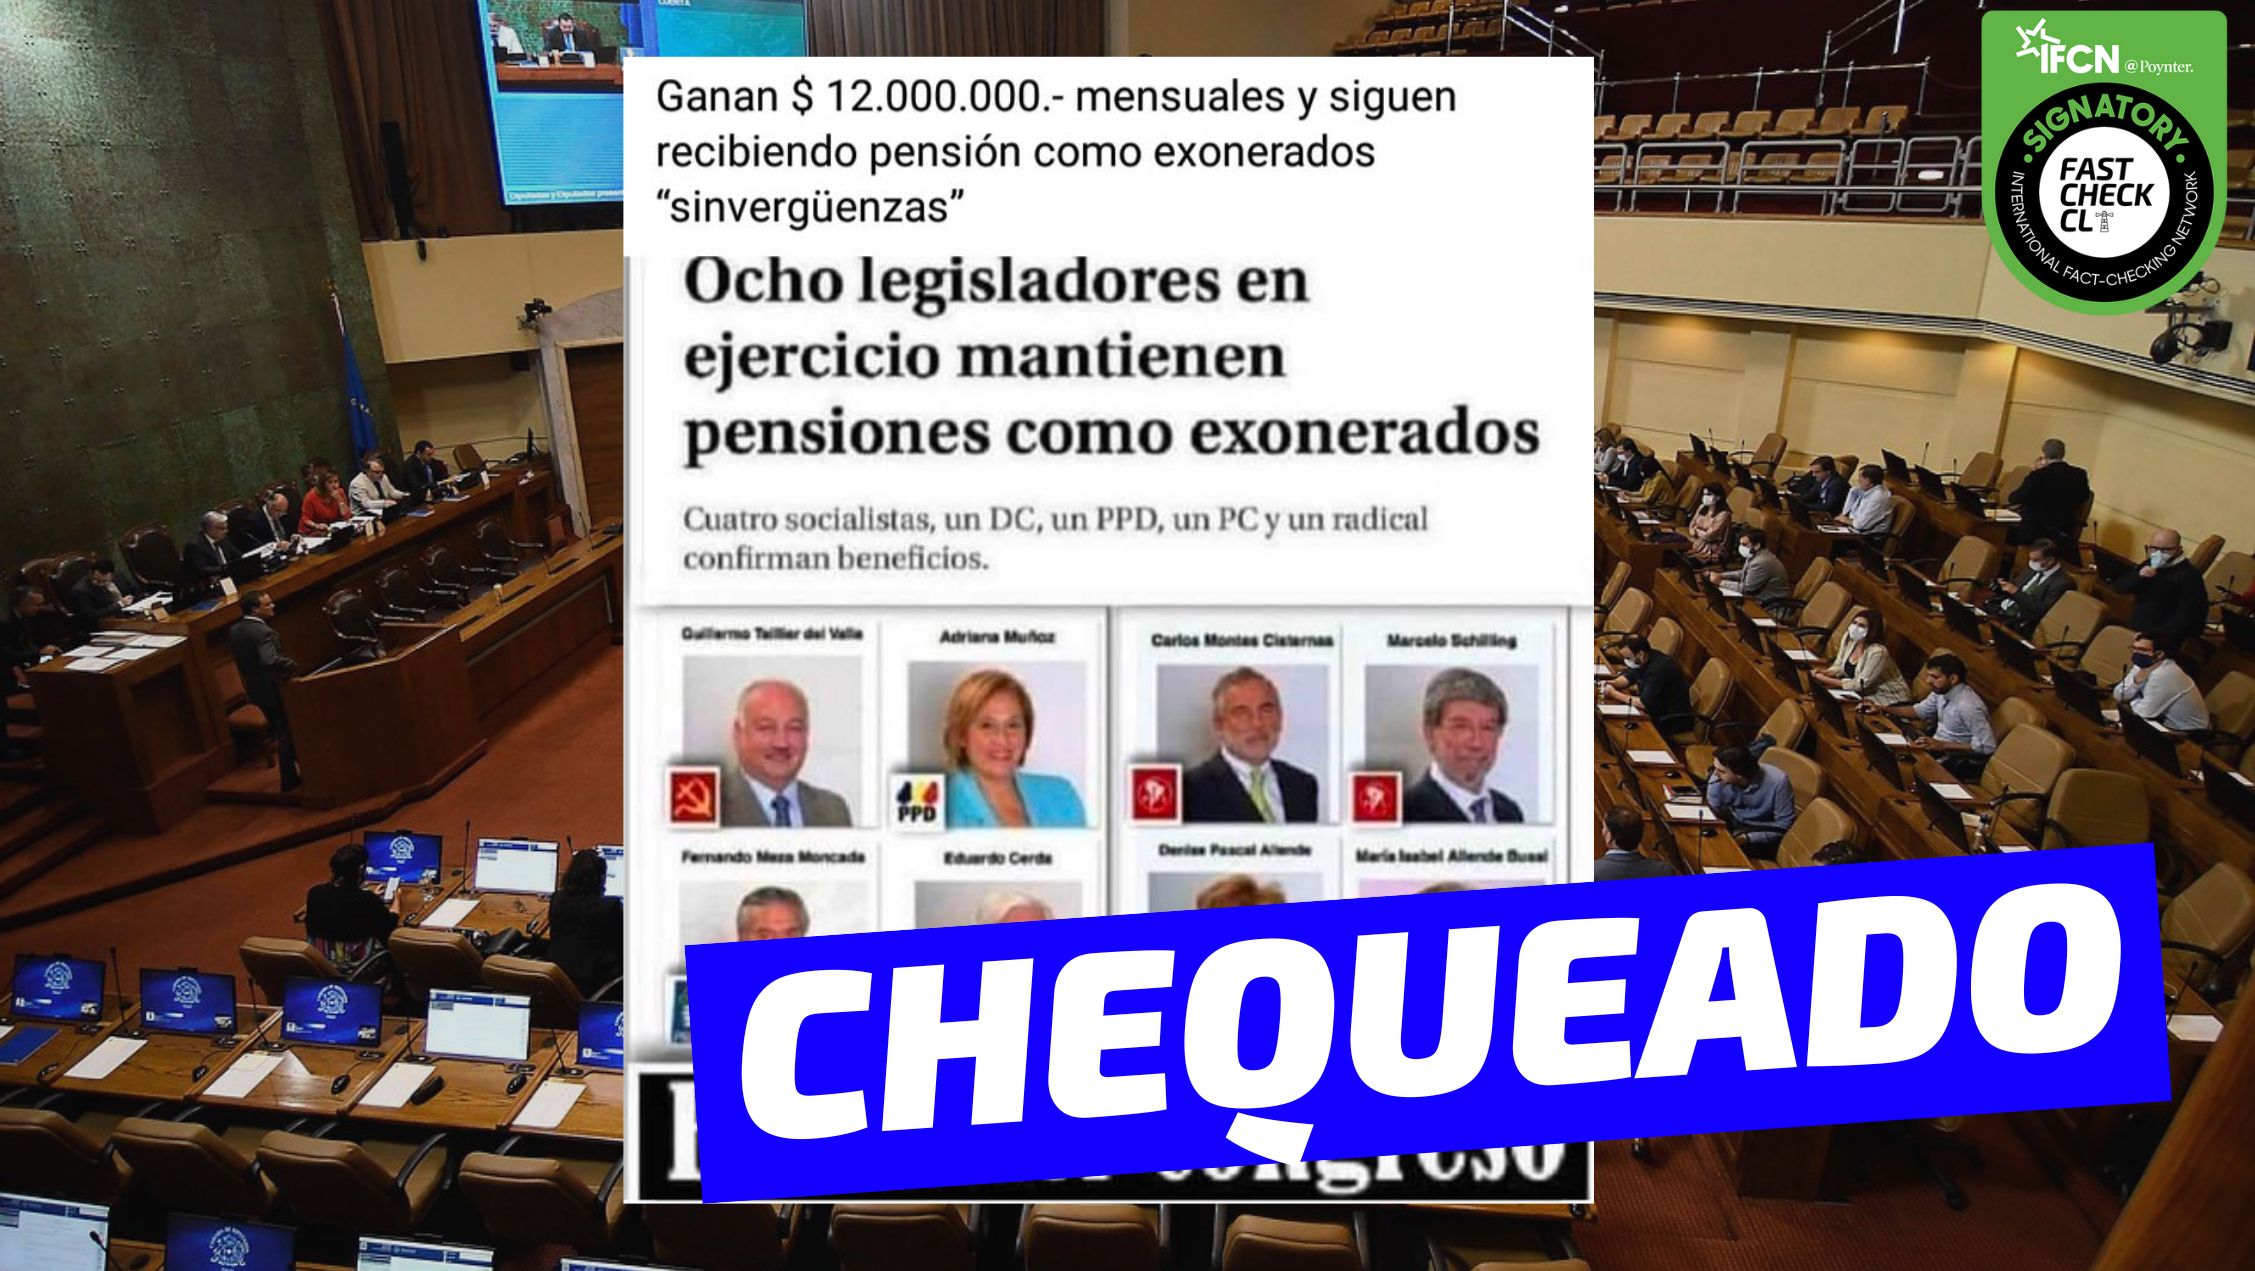 You are currently viewing Imagen de los ocho legisladores que mantienen pensiones como exonerados políticos: #Chequeado